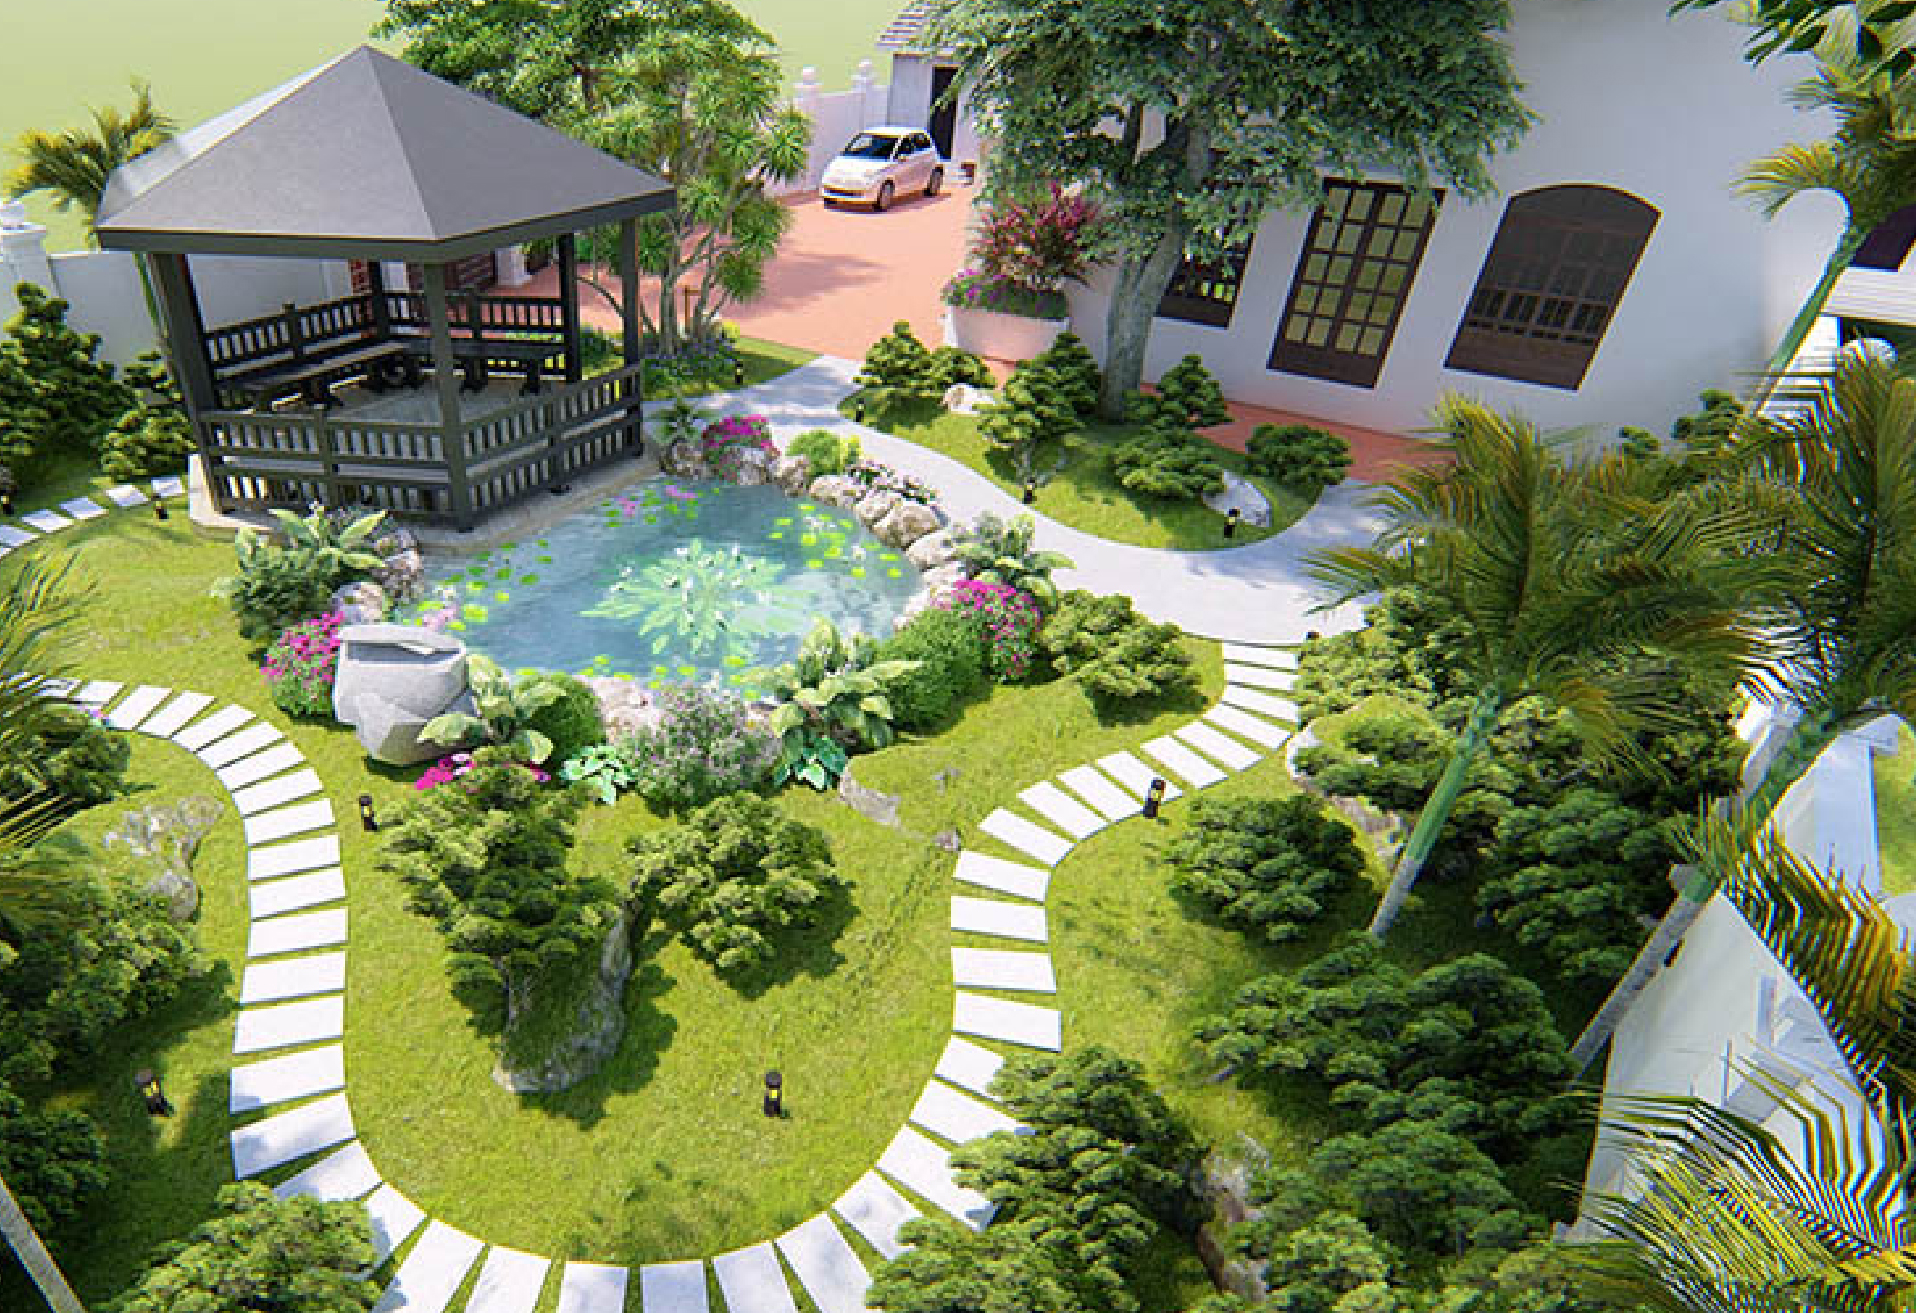 10+ mẫu biệt thự nhà vườn 1 tầng giá rẻ có chi phí đầu tư dưới 1 tỷ đồng -  Kiến trúc Angcovat